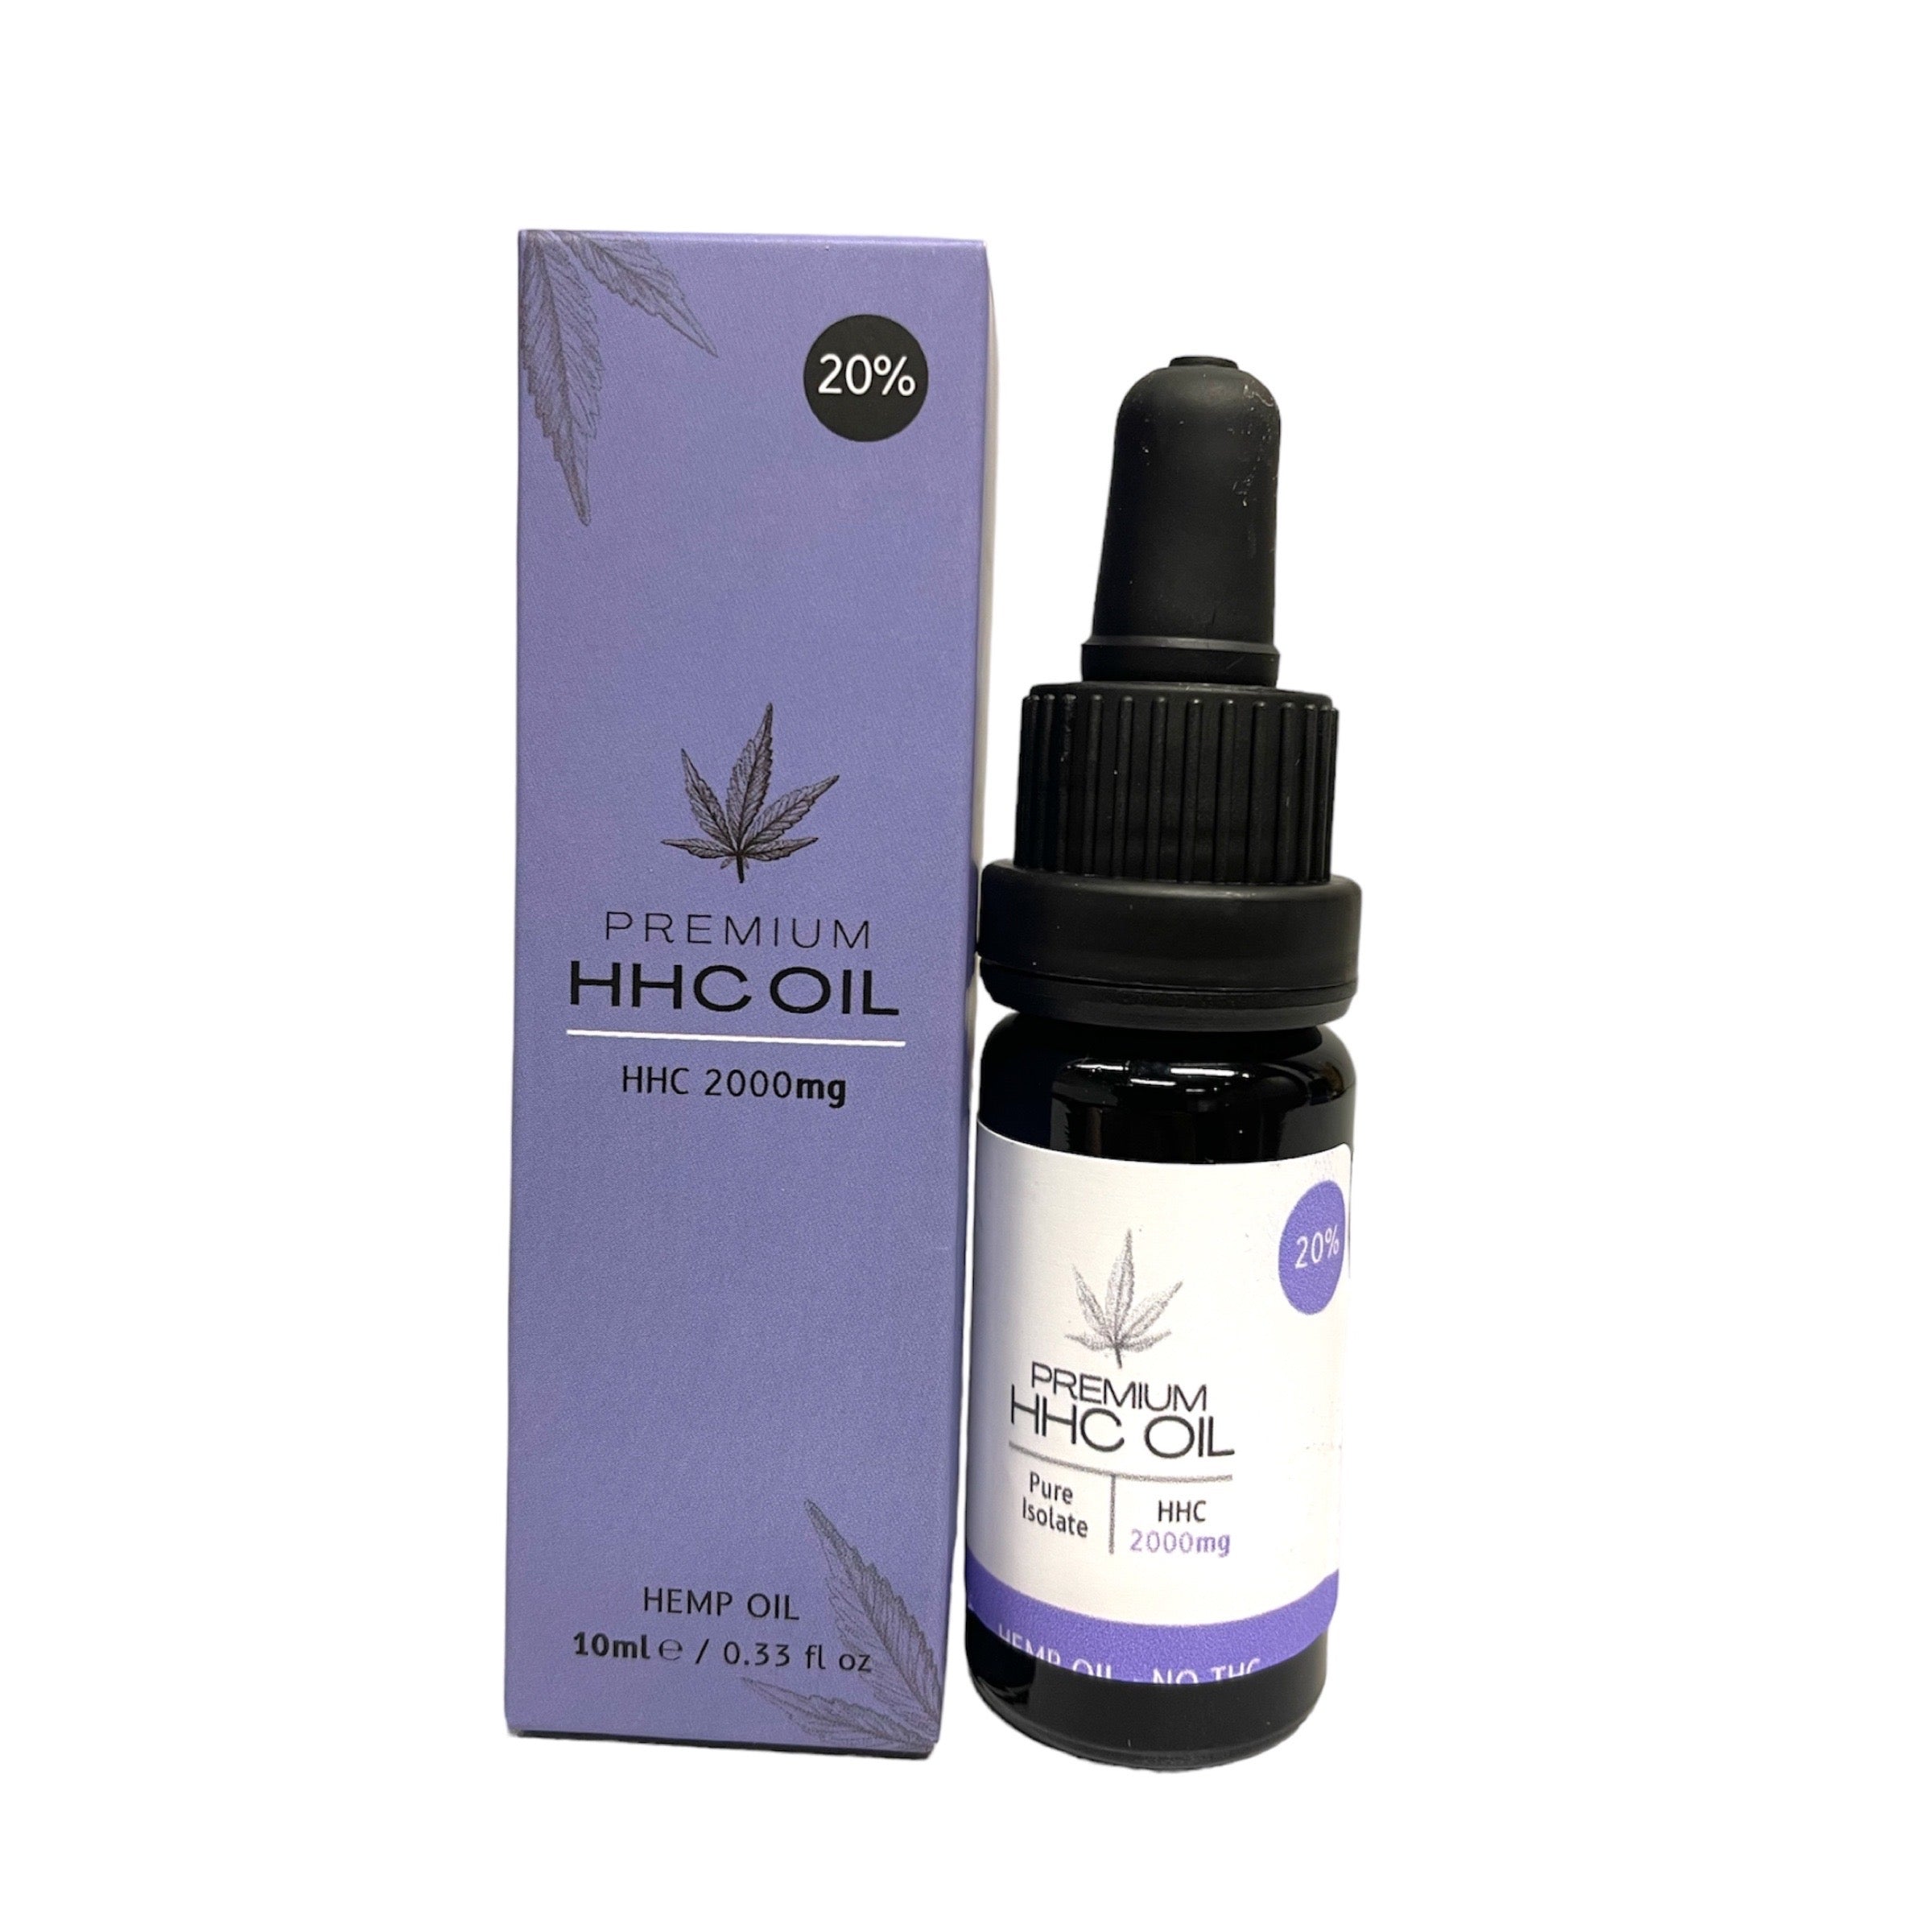 HHC Oil 20% (Hexahydrocannabinol) - 10ml - Pure Extract Cbd